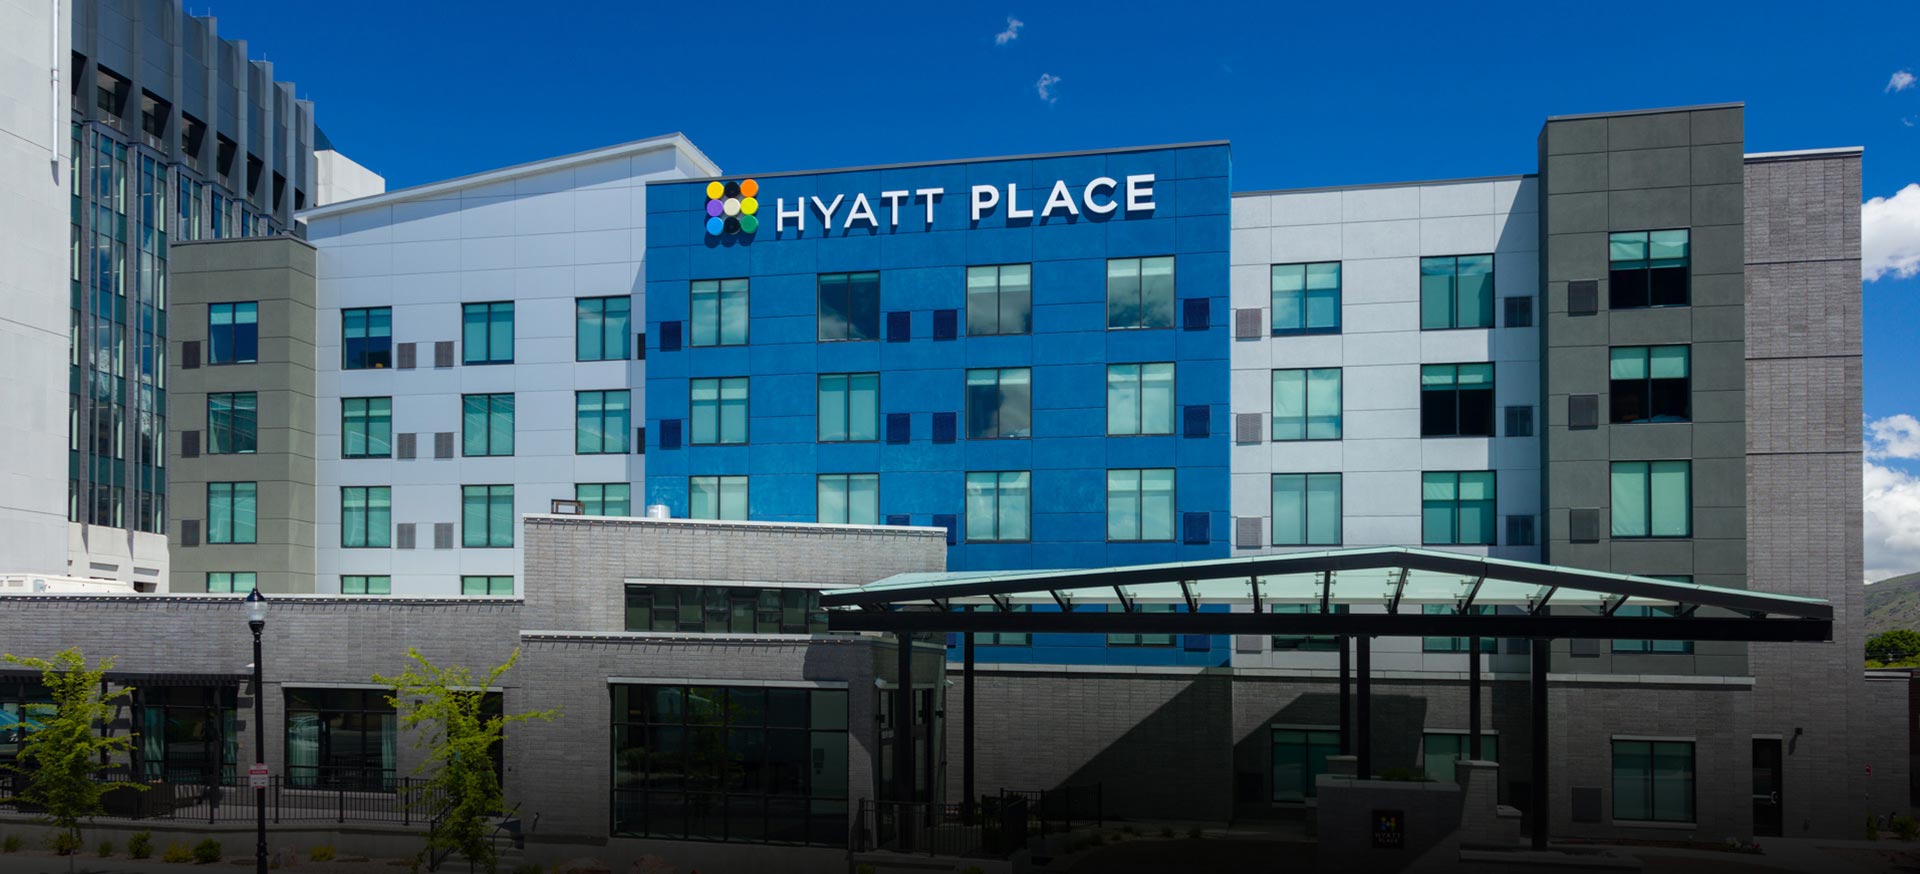 Hyatt Place Hotel